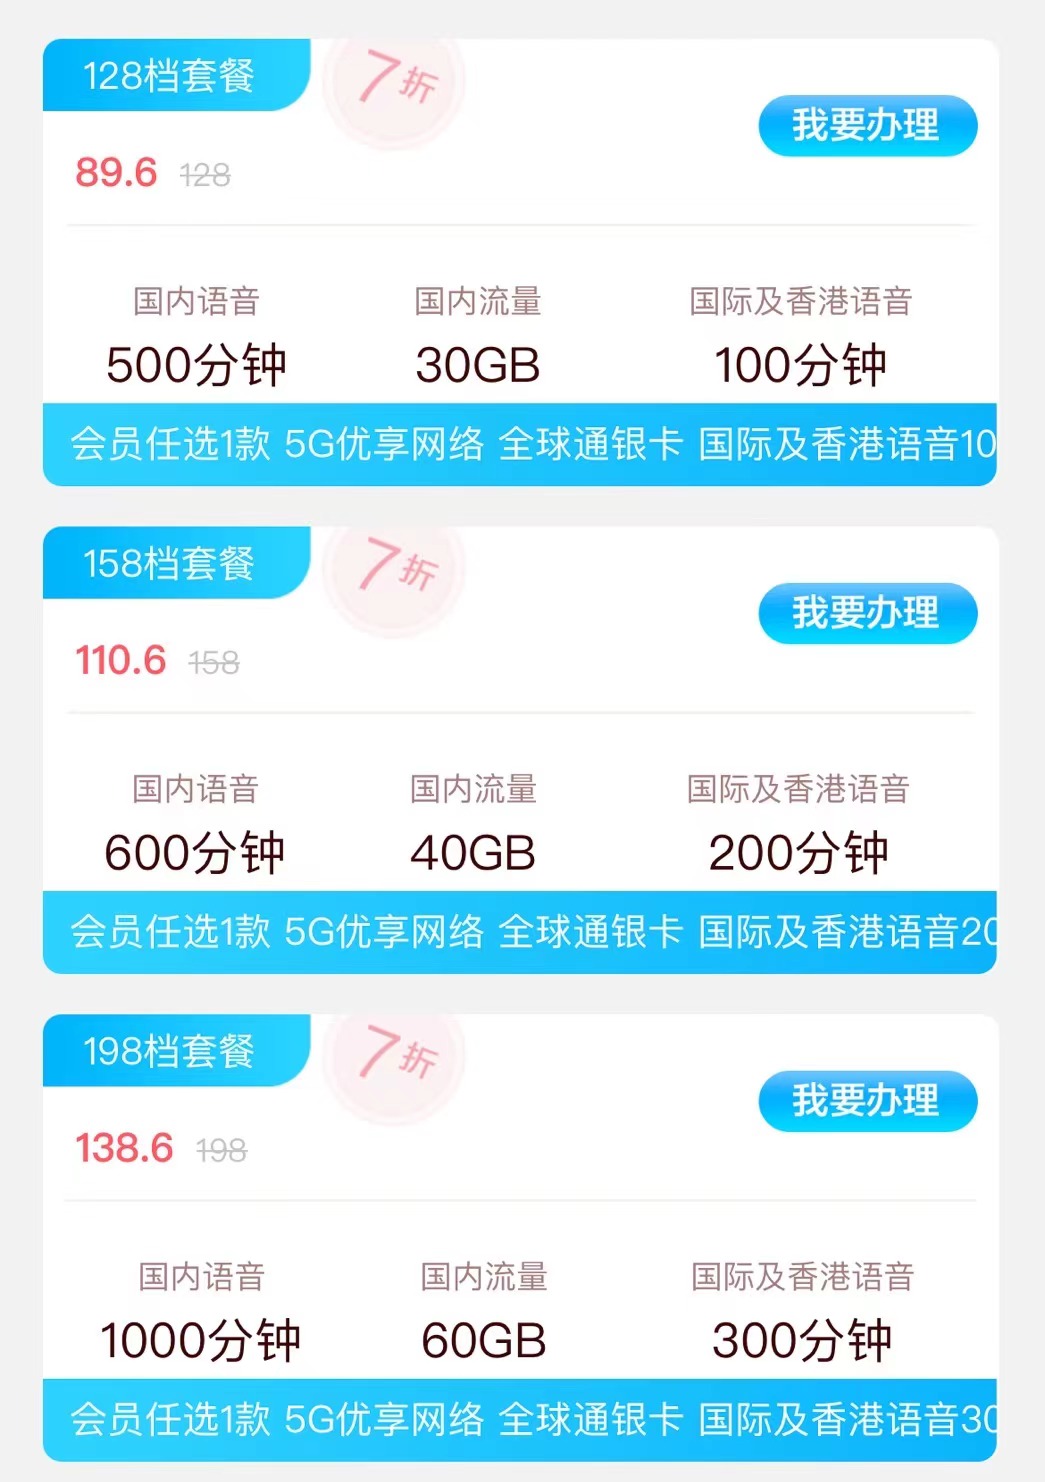 第四大运营商中国广电5G放号：套餐38元起 能否挑战三巨头